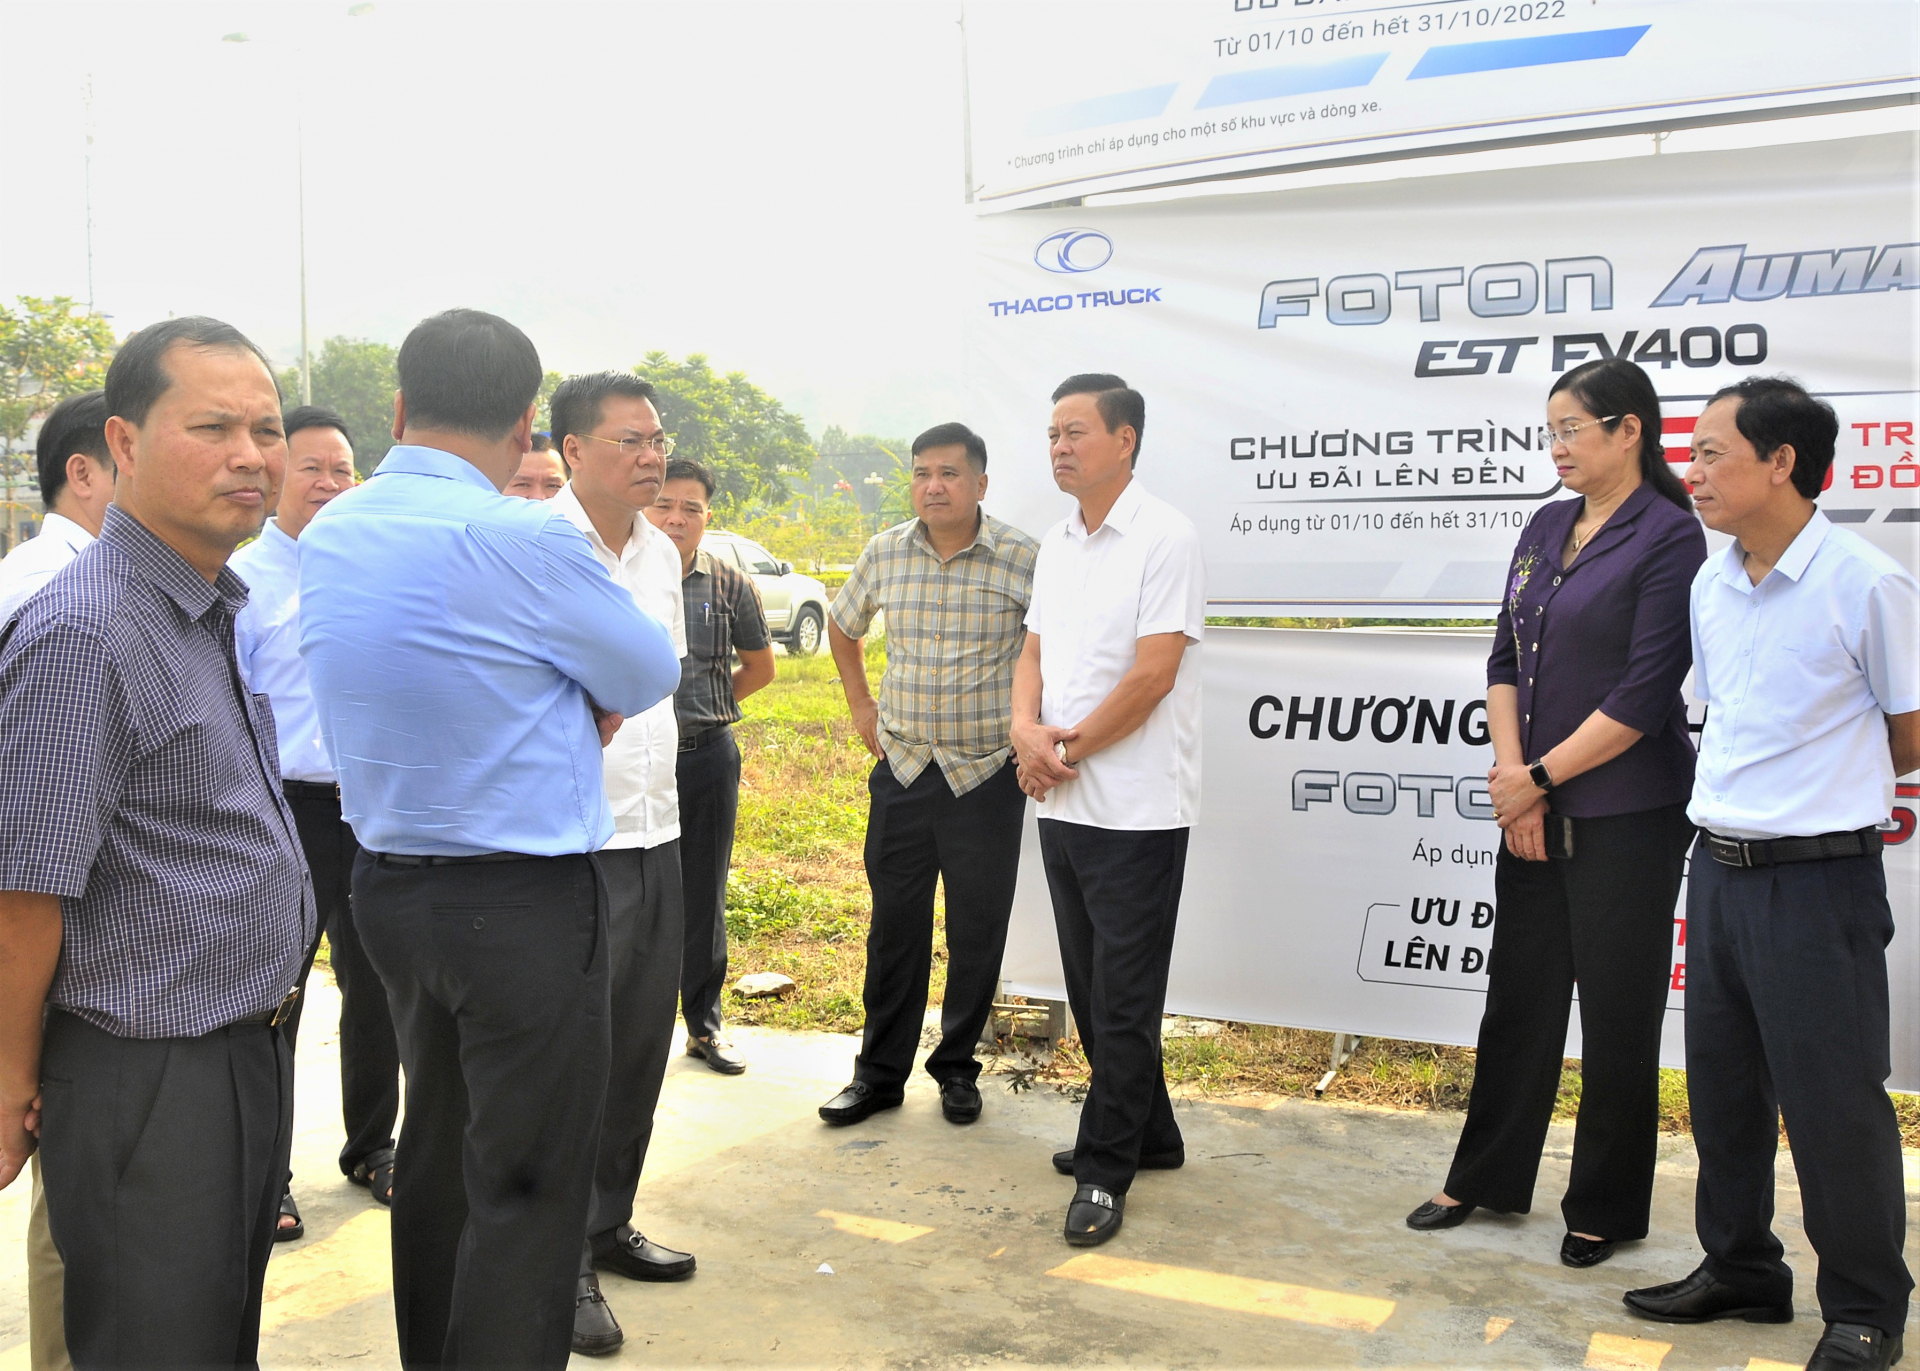 Chủ tịch UBND tỉnh Nguyễn Văn Sơn kiểm tra khu vực đoạn đầu đường đôi thuộc thôn Lâm Đồng, xã Phương Thiện.